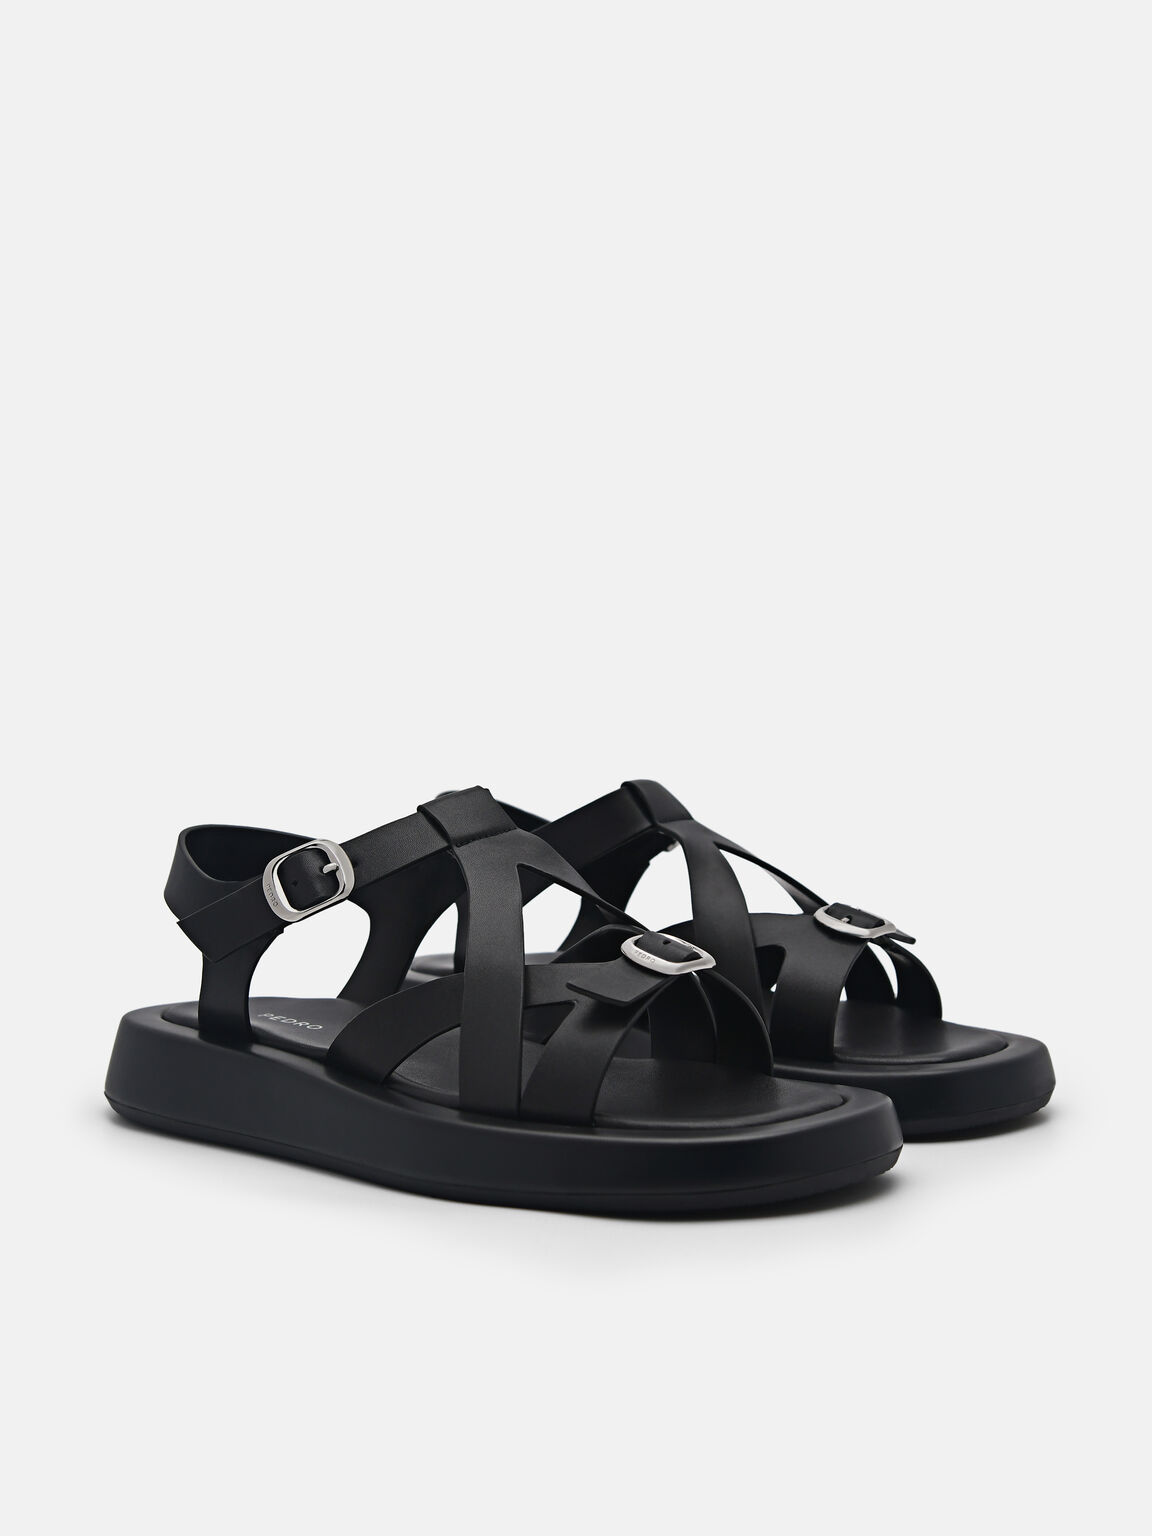 Eden Ankle Strap Sandals, Black, hi-res